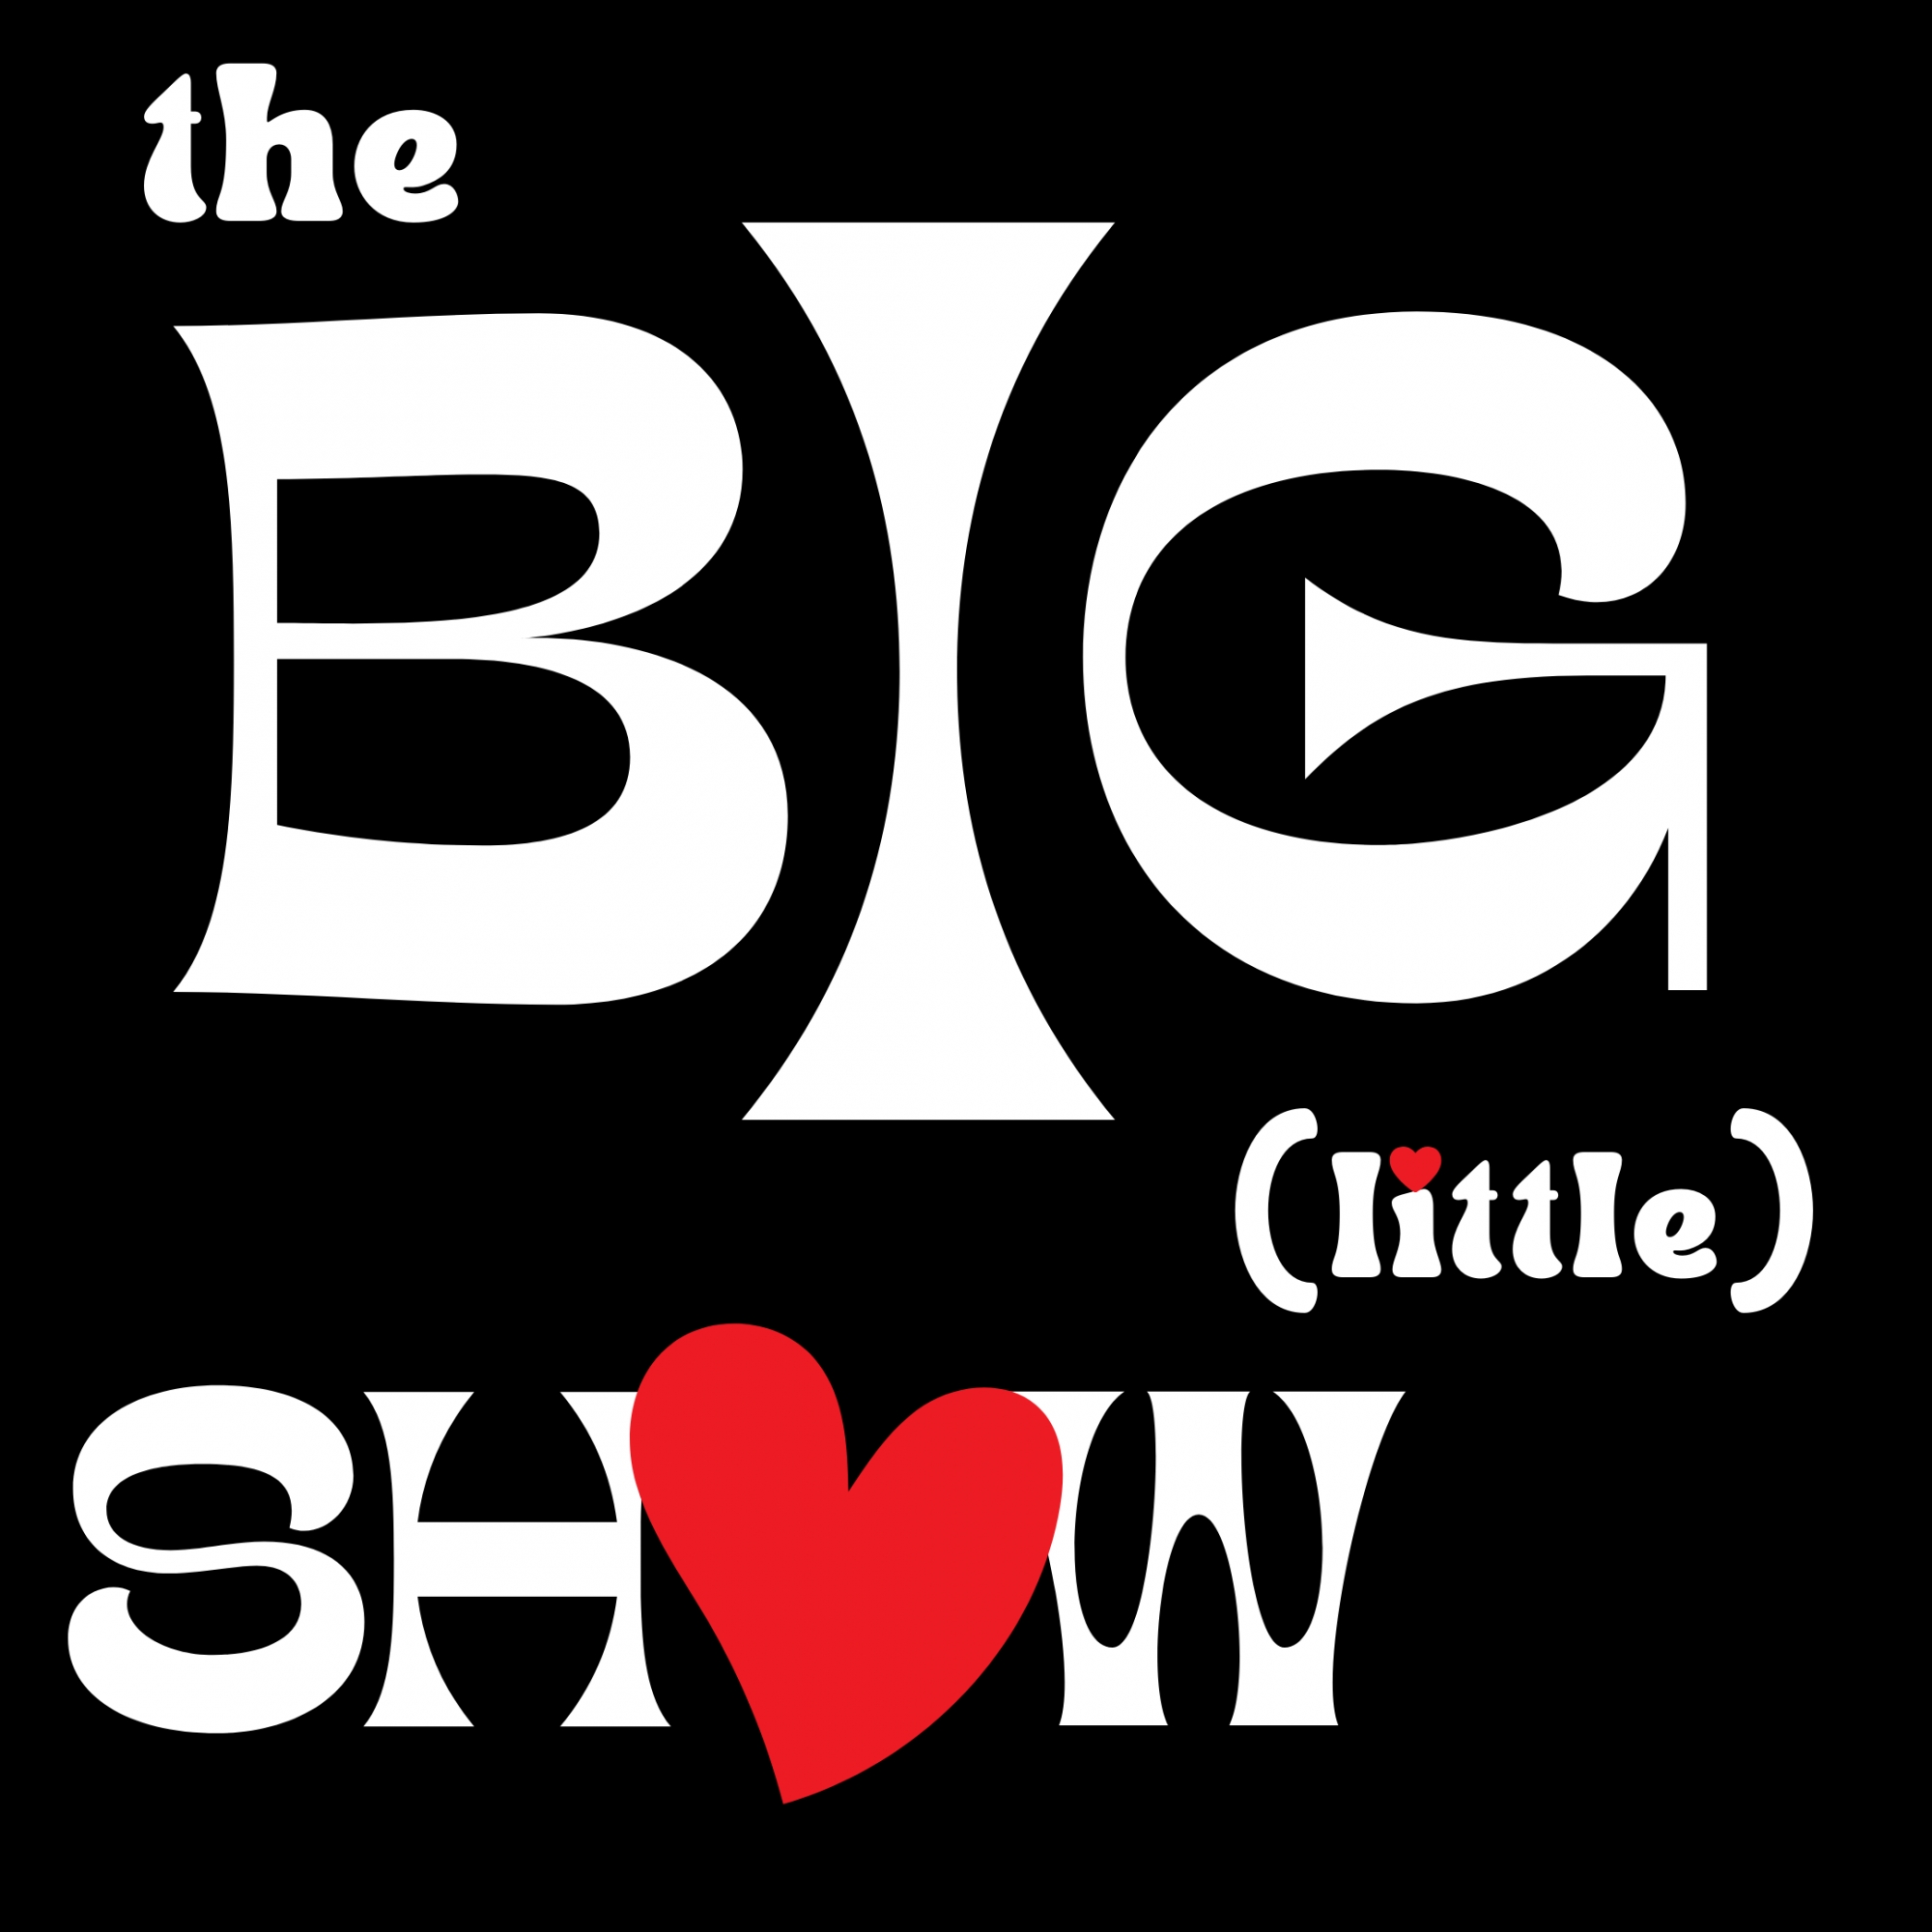 Dec '22 The Big (little) Show - Show 1